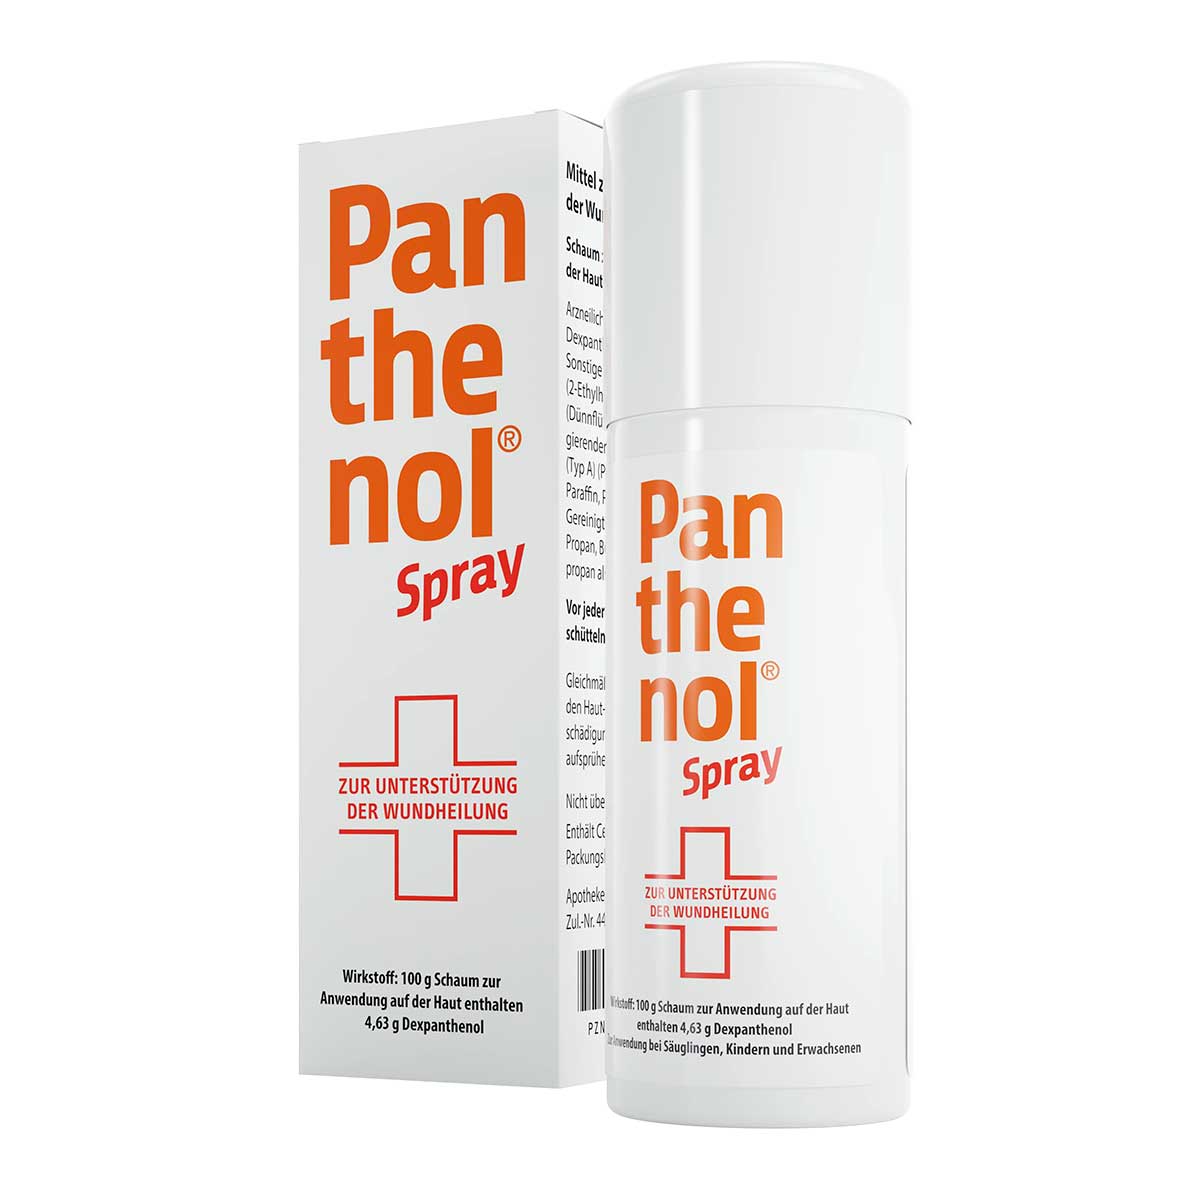 Panthenol-Spray 130g PZN 04020784 | eBay